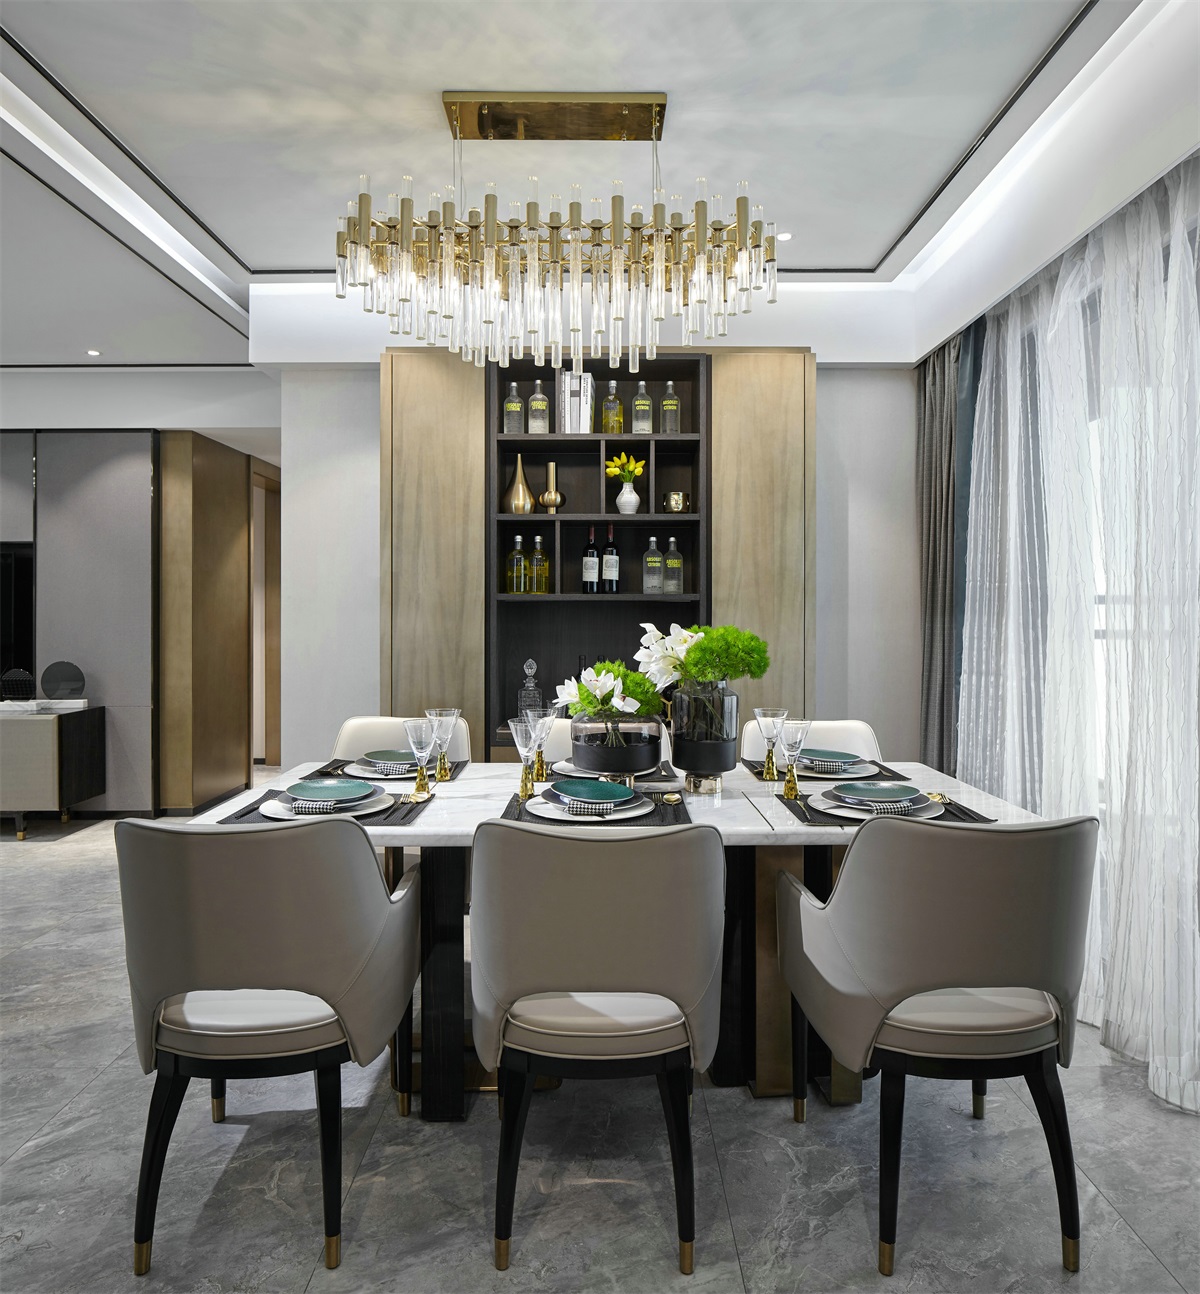 设计师使用不同的材质及元素来定义用餐空间，空间配色干净利落，直中人心。